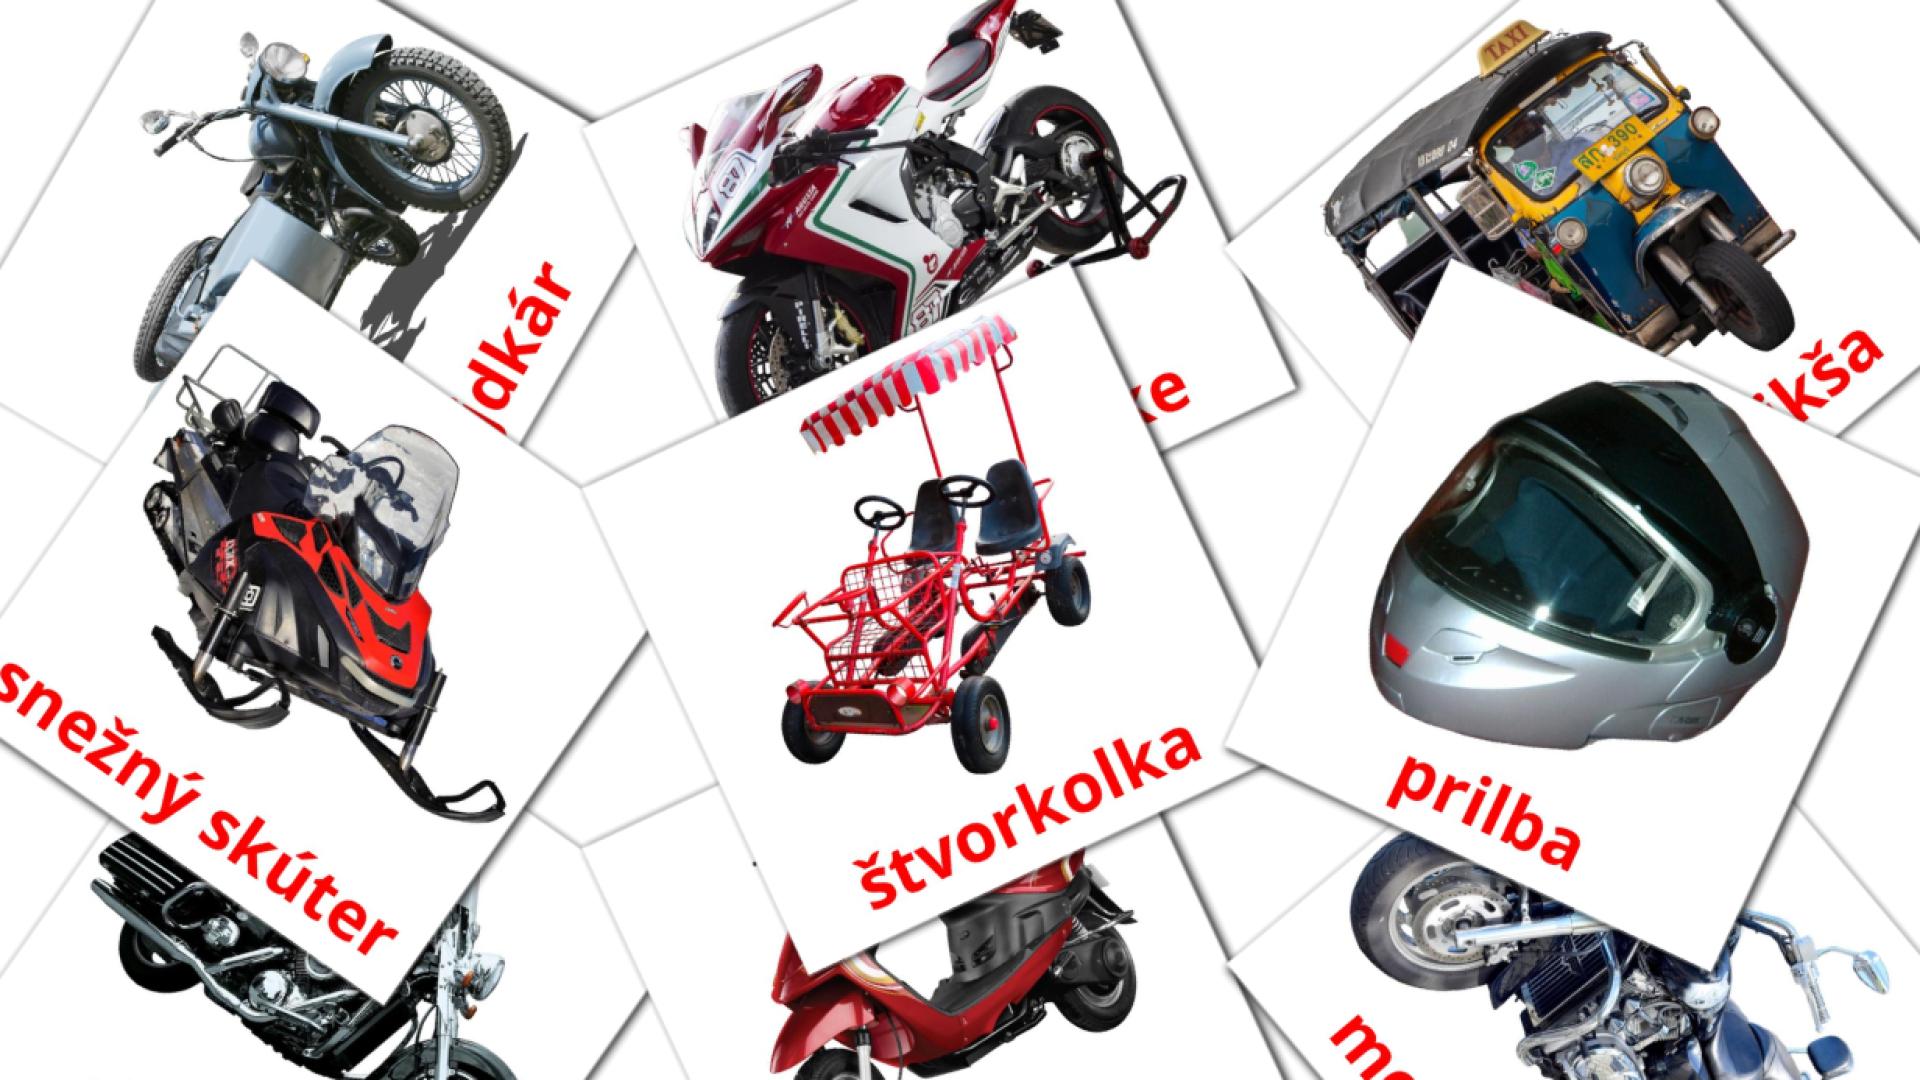 Bildkarten für Motocykle